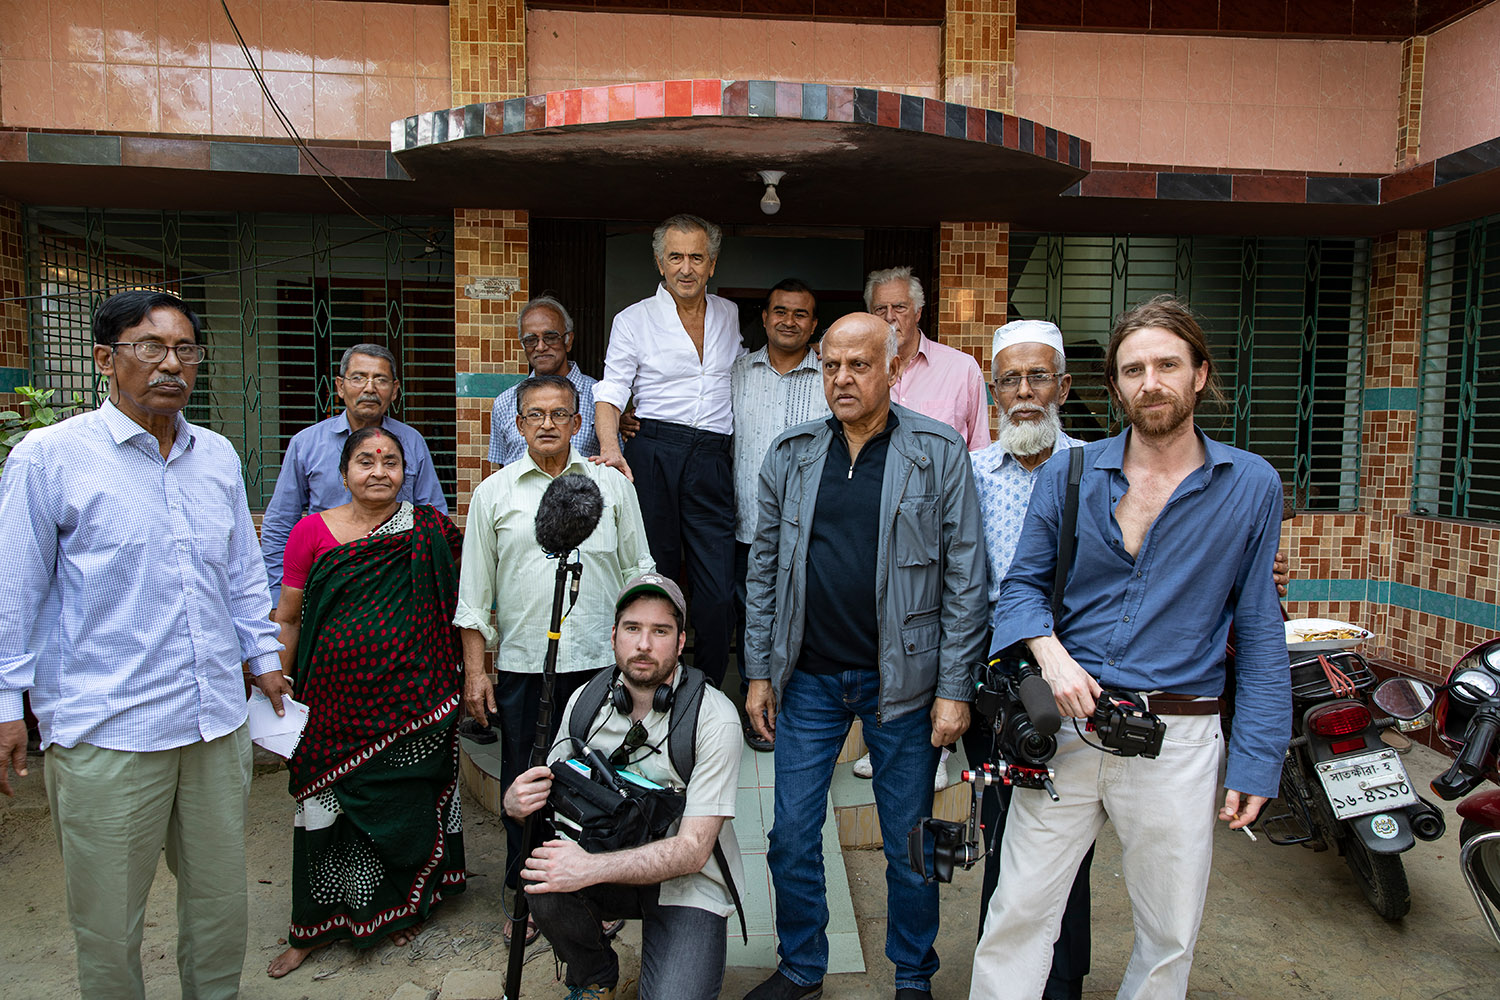 En mars 2020 à Jessore au Bangladesh, Bernard-Henri Lévy, Gilles Hertzog, le directeur de la photographie Olivier Jacquin et l'ingénieur du son Nicolas Velasco, sont entourés par Akim Mukherjee et ses proches.